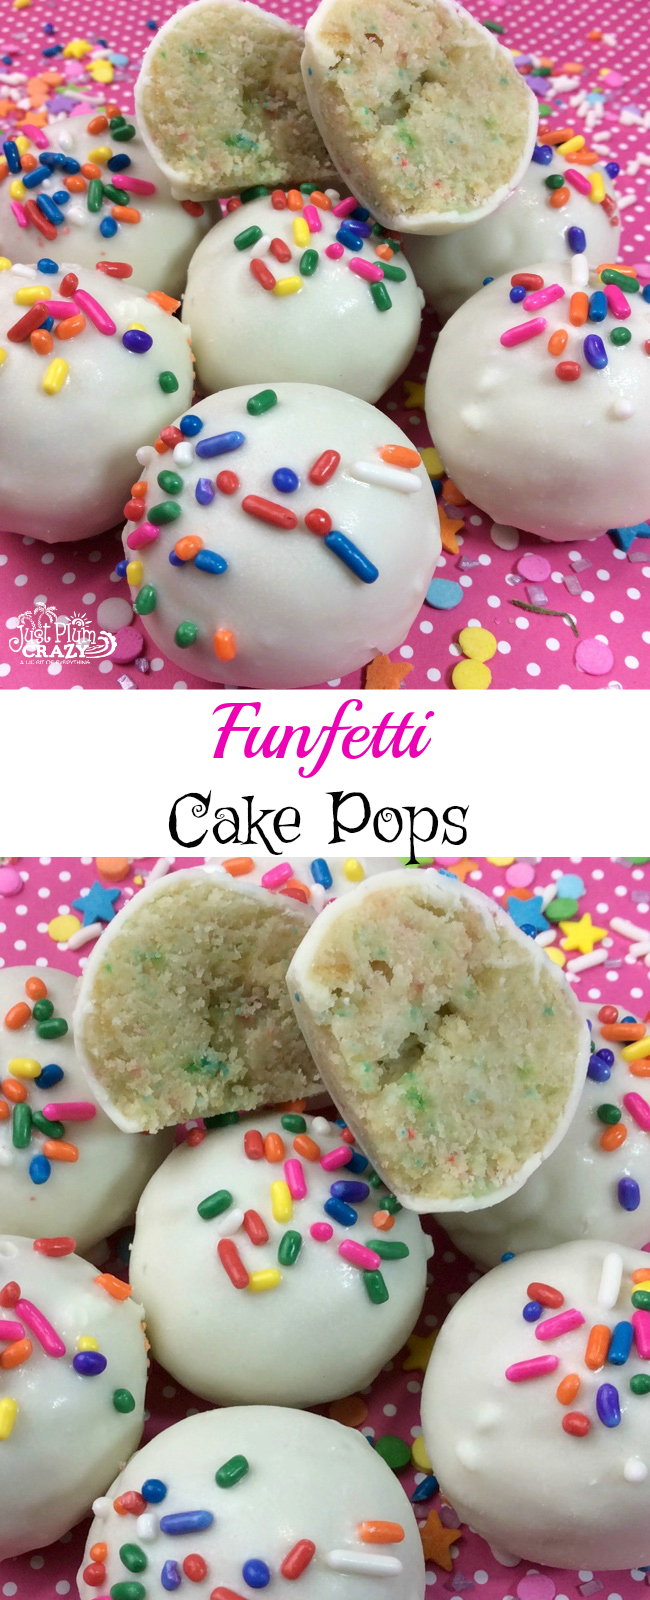 Easy Funfetti Cake Pops Recipe Perfect For Birthdays